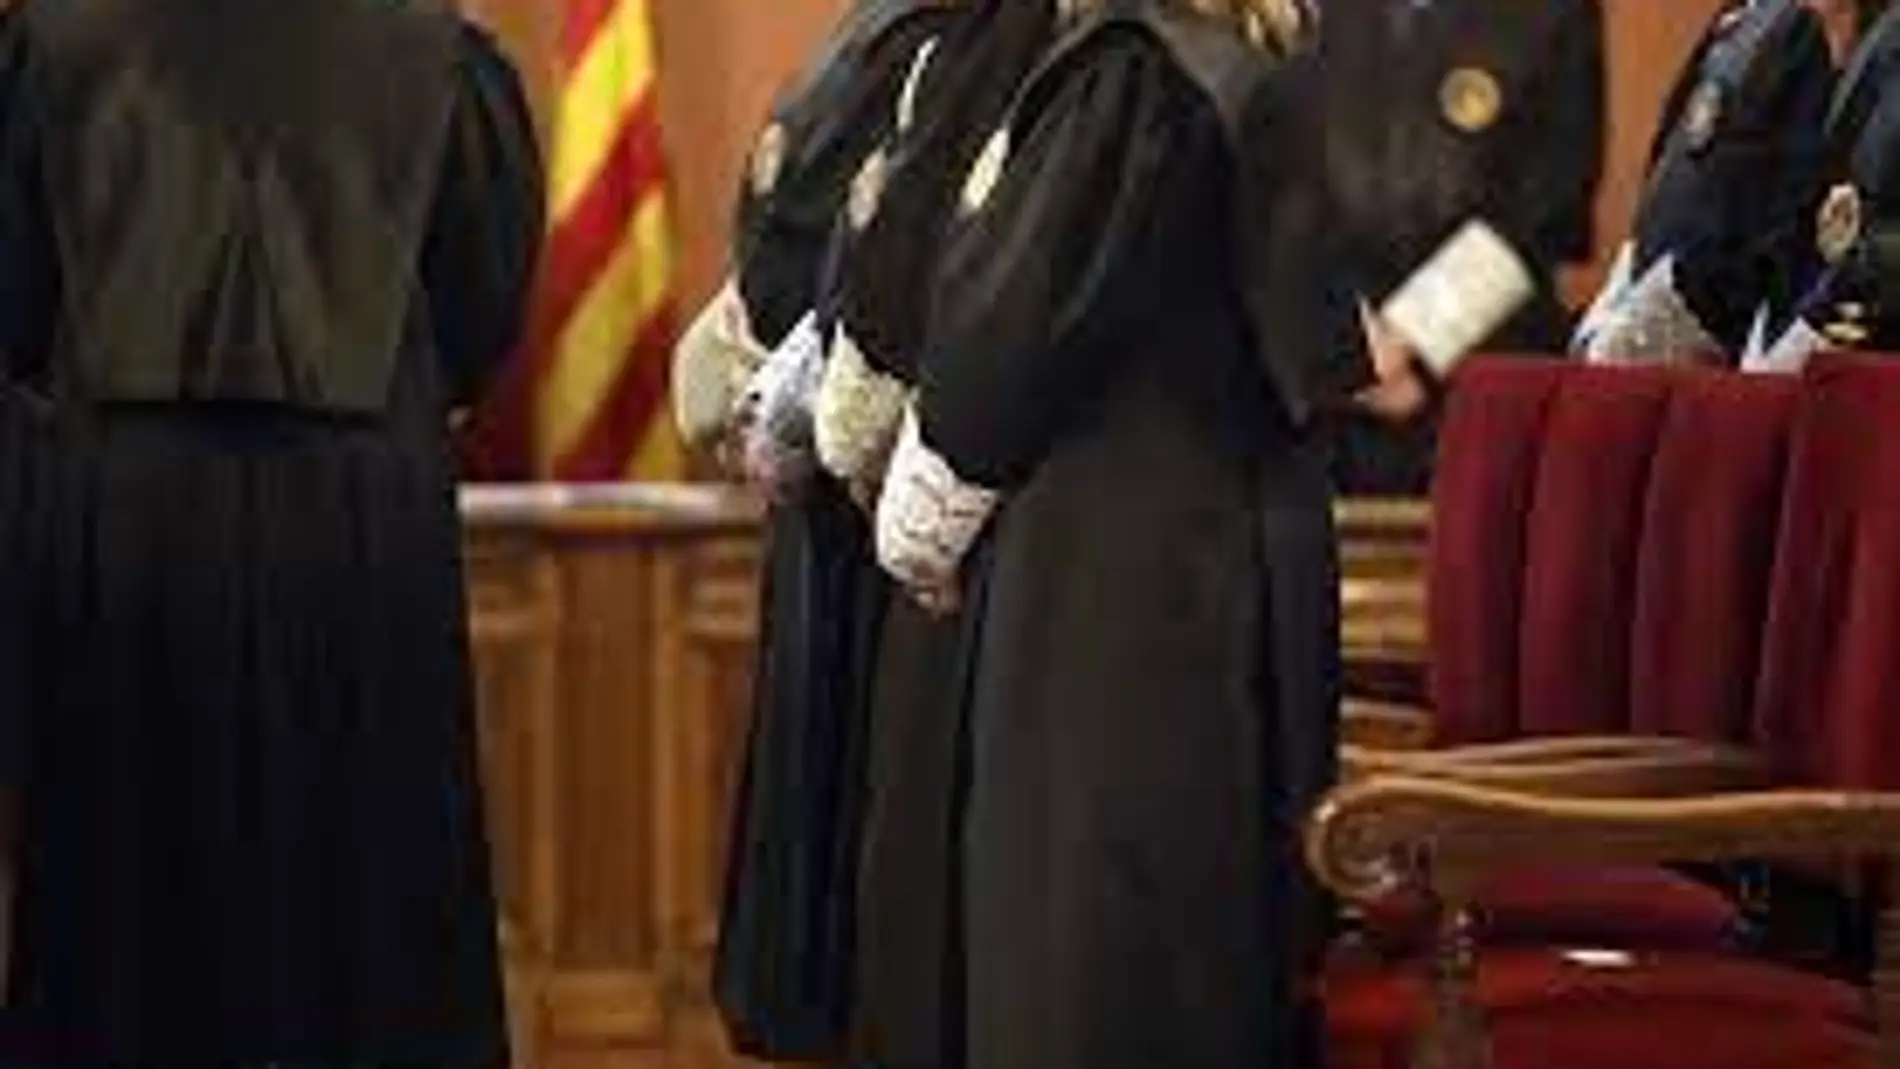 Un total de 220 jueces han abandonado Cataluña desde el referéndum independentista ilegal de 2017